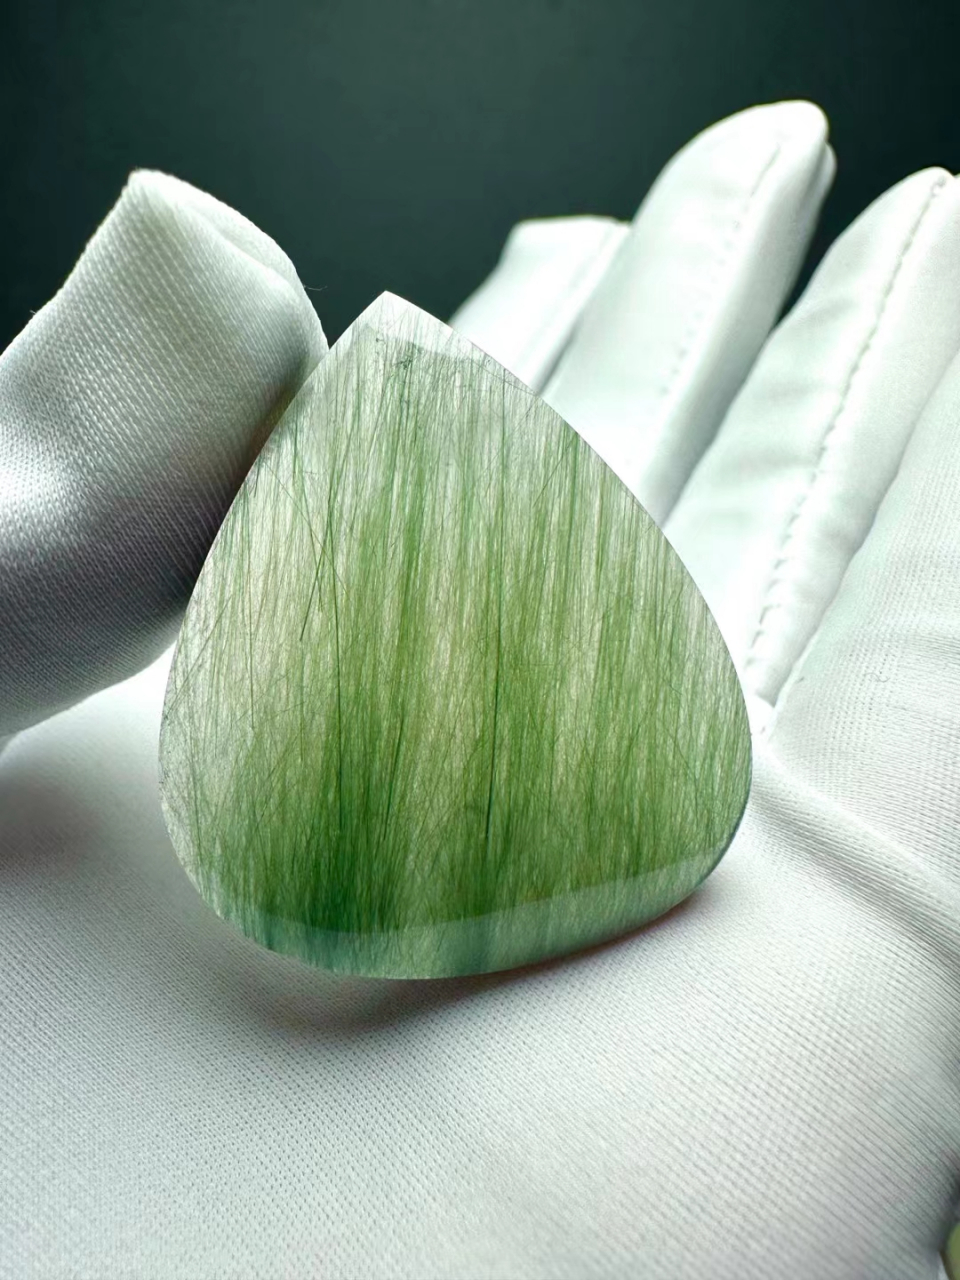 天然绿发晶猫眼吊坠 来自巴西老矿的顶级绿发,收藏价值高完美款独一无